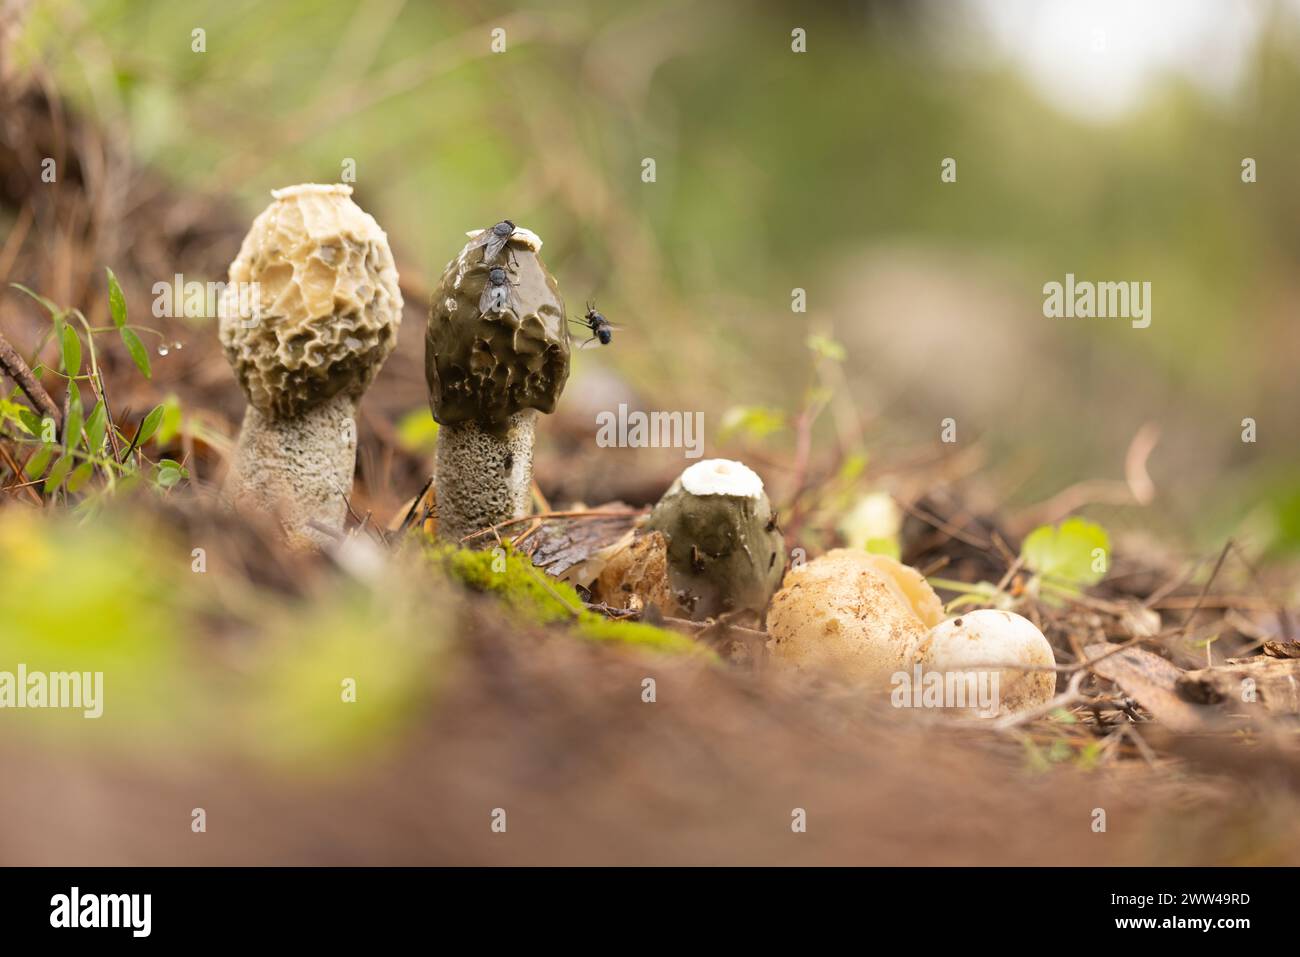 Exemplar des Gemeinen Stinkmorchels Pilze (Phallus impudicus) wächst in Wäldern Boden. Diese sind die Fruchtkörper des Pilzes, die Feeds auf Verrottenden pflanzlichen matt Stockfoto